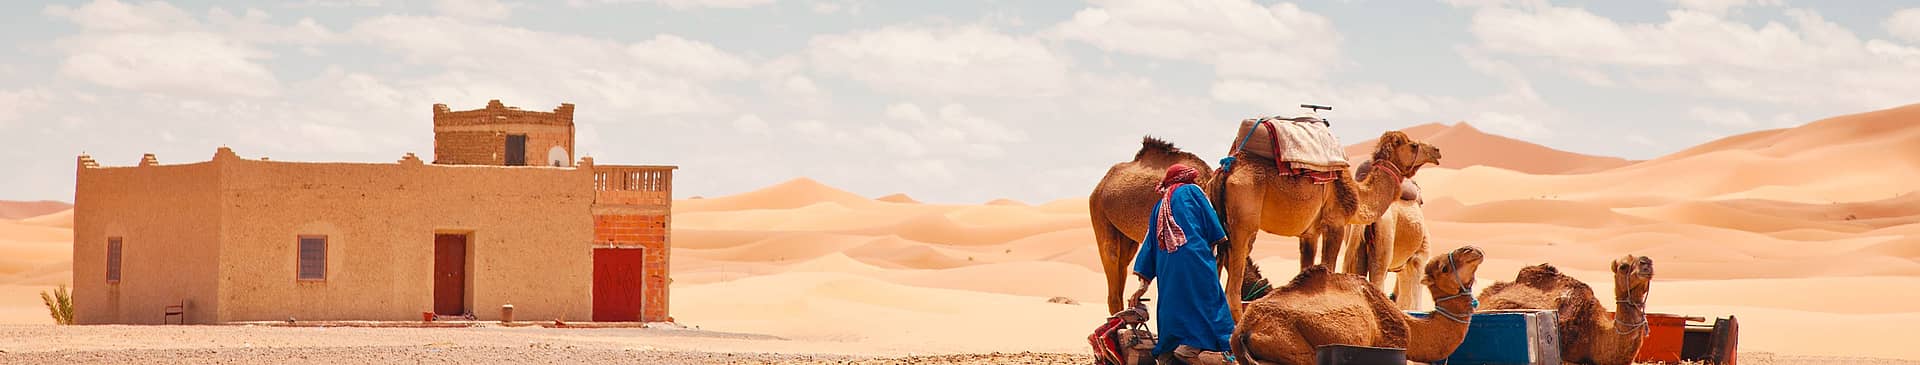 Viaggi nel deserto in Marocco